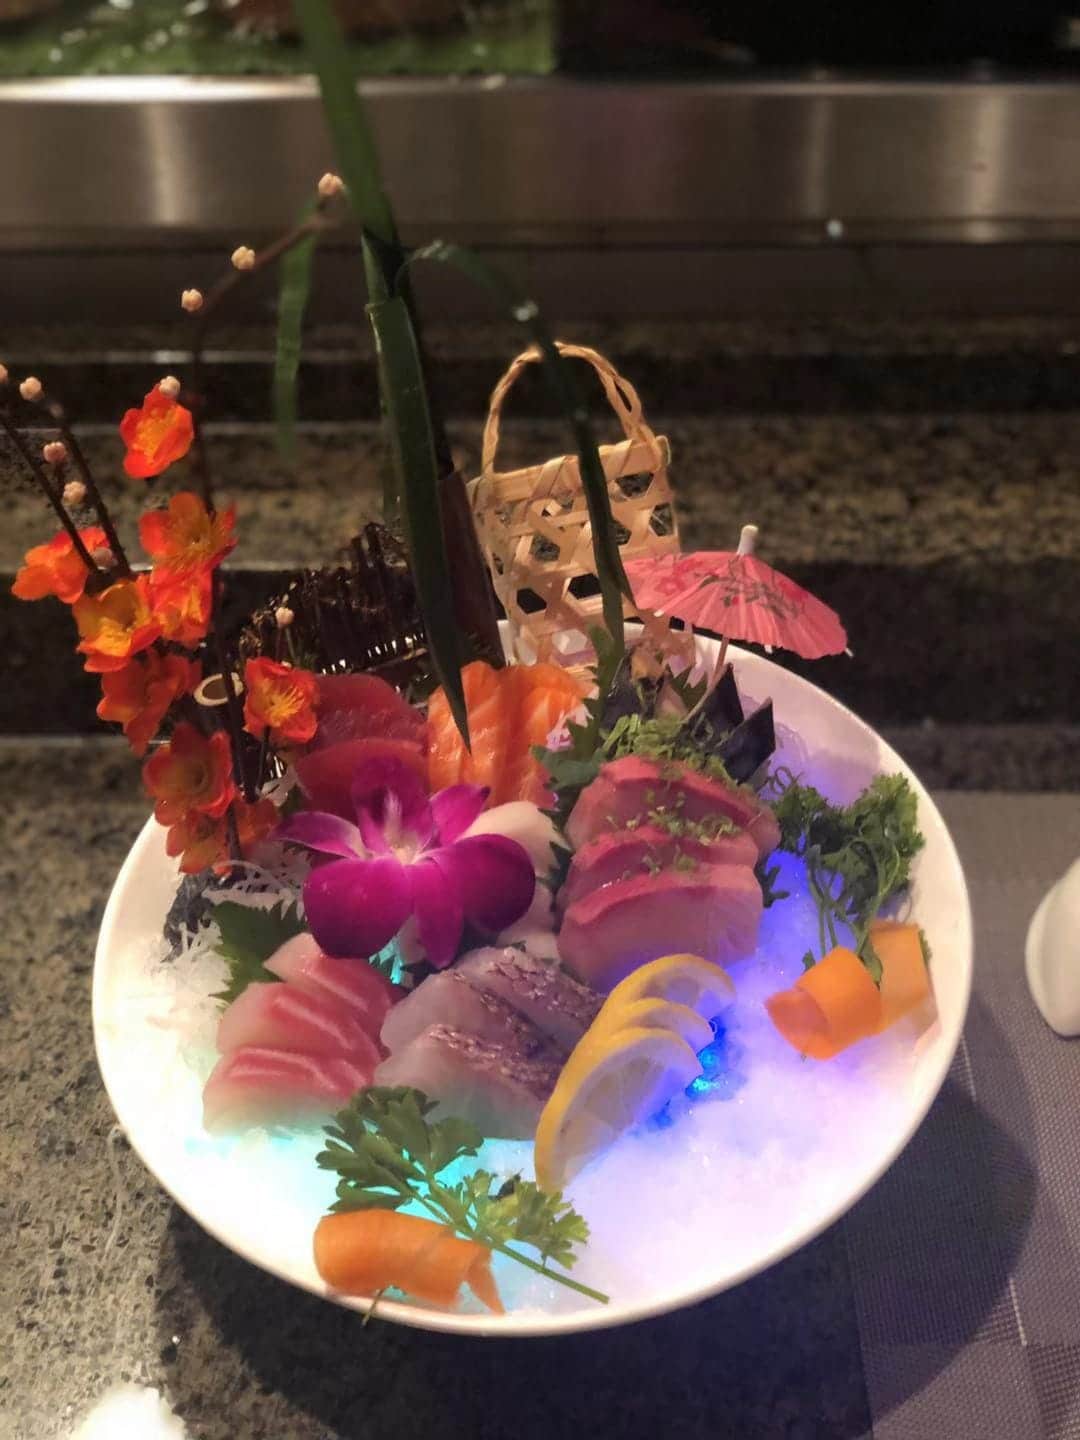 Okinawa Sushi and Hibachi creates elaborate artwork from its sushi